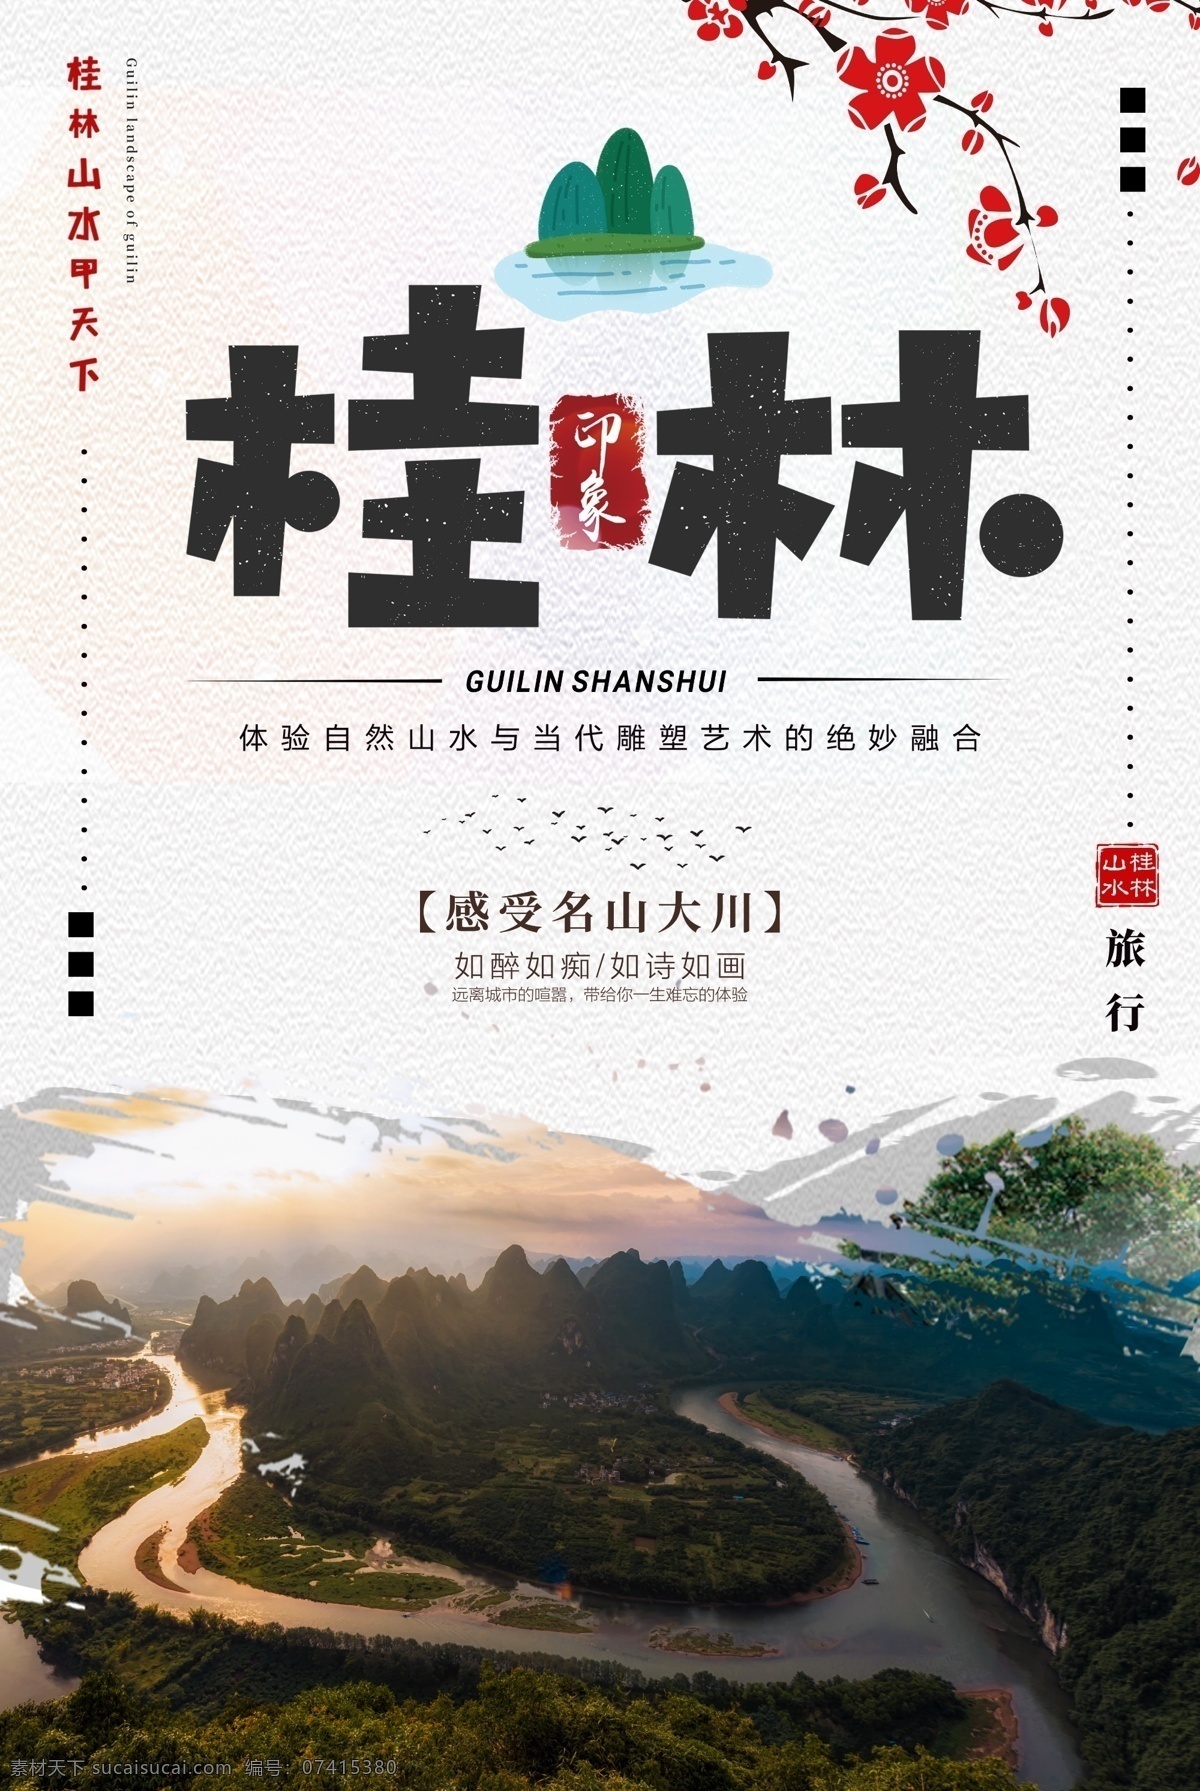 印象 桂林 旅行 海报 桂林山水旅行 广西 山水 旅游海报 印象桂林 出游 旅游